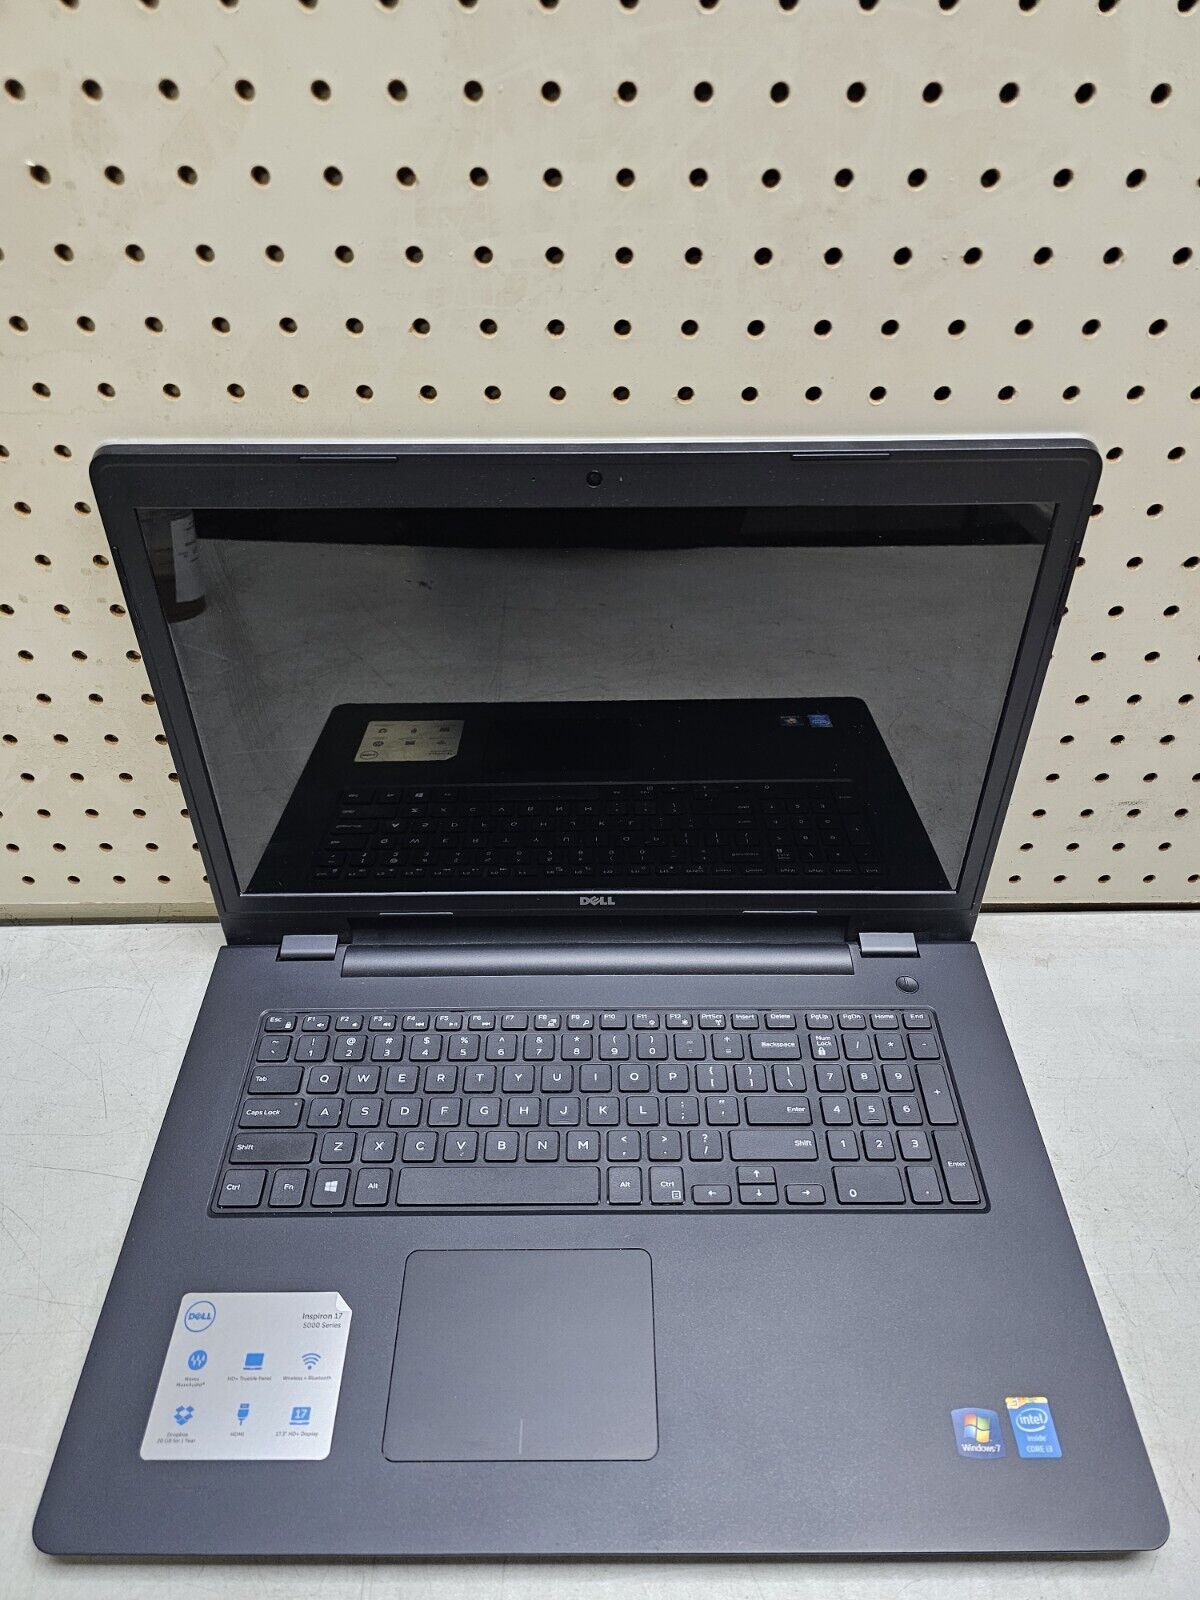 Dell Inspiron 17 5748 Laptop - i3-4030U - 4GB RAM - 500GB HDD - Windows 10